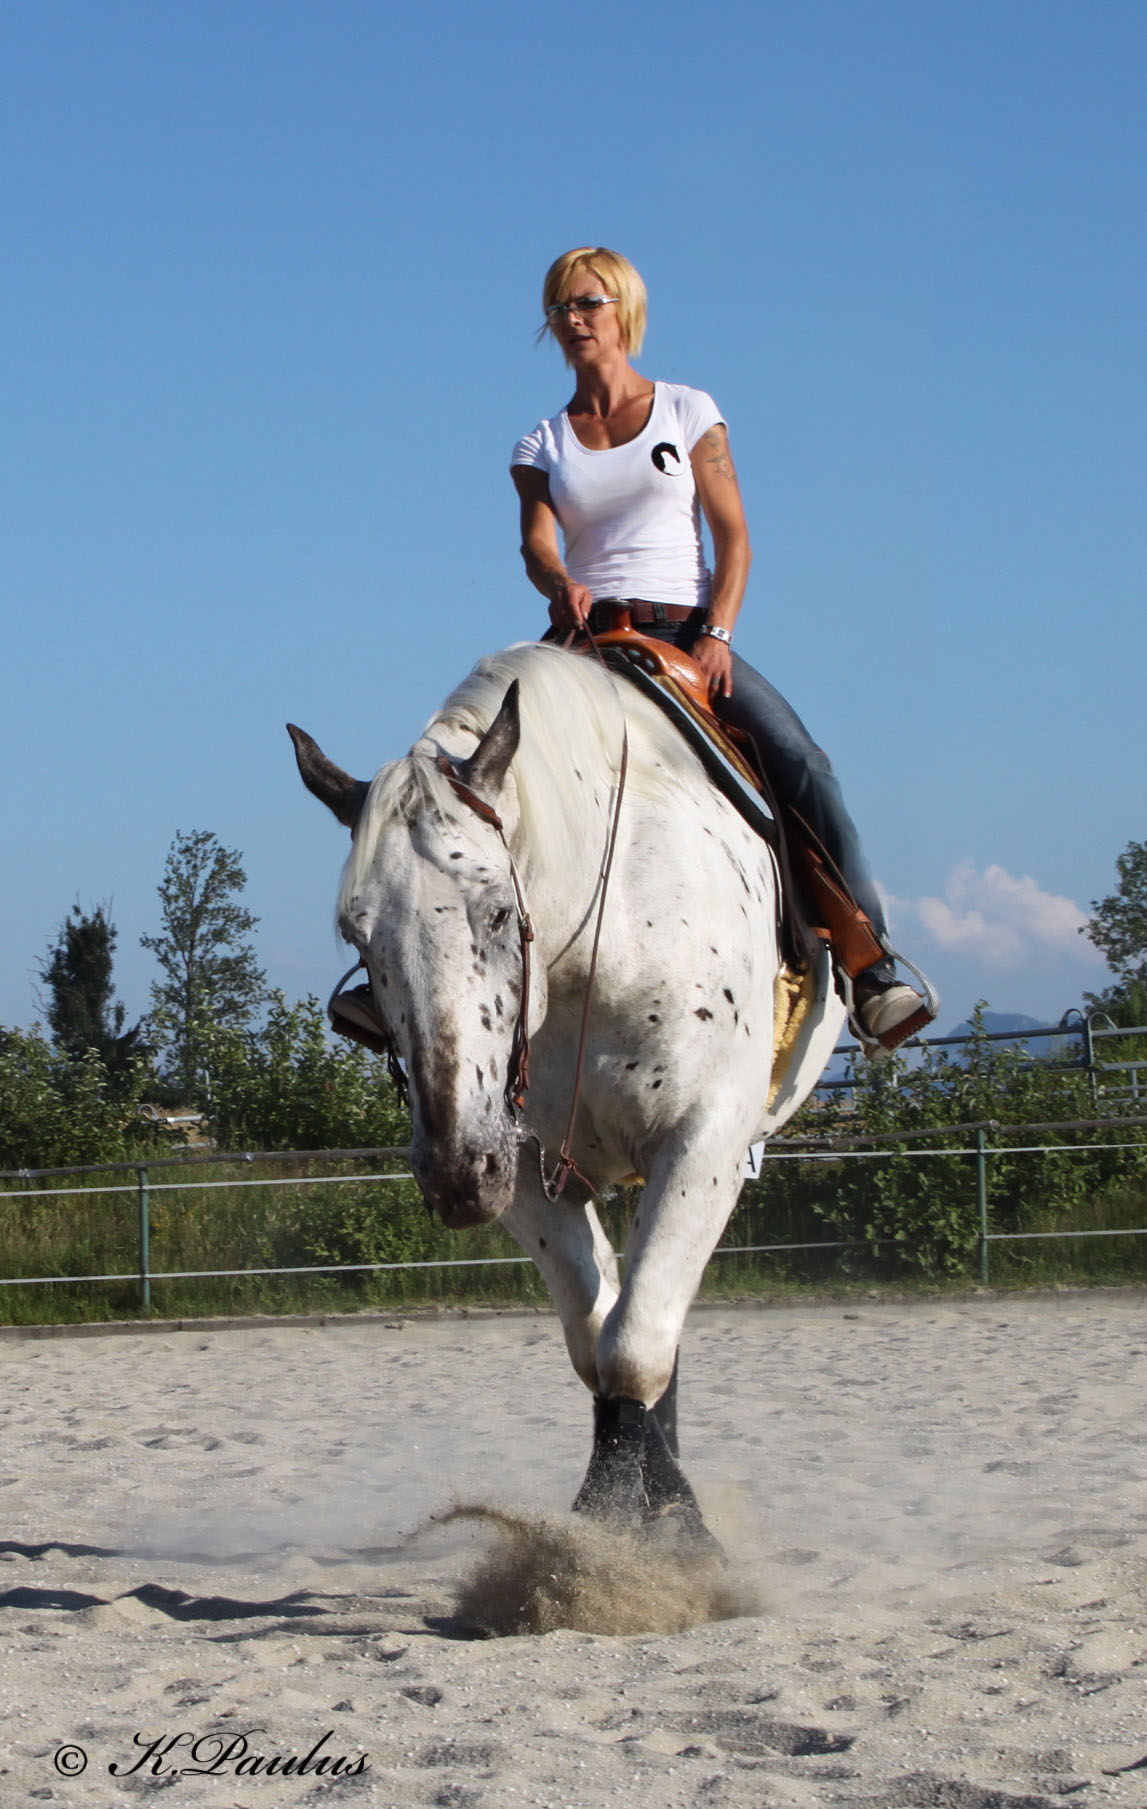 Trainingspferde mit Pferdehanf gefüttert - das Wohlbefinden des Pferdes fördern